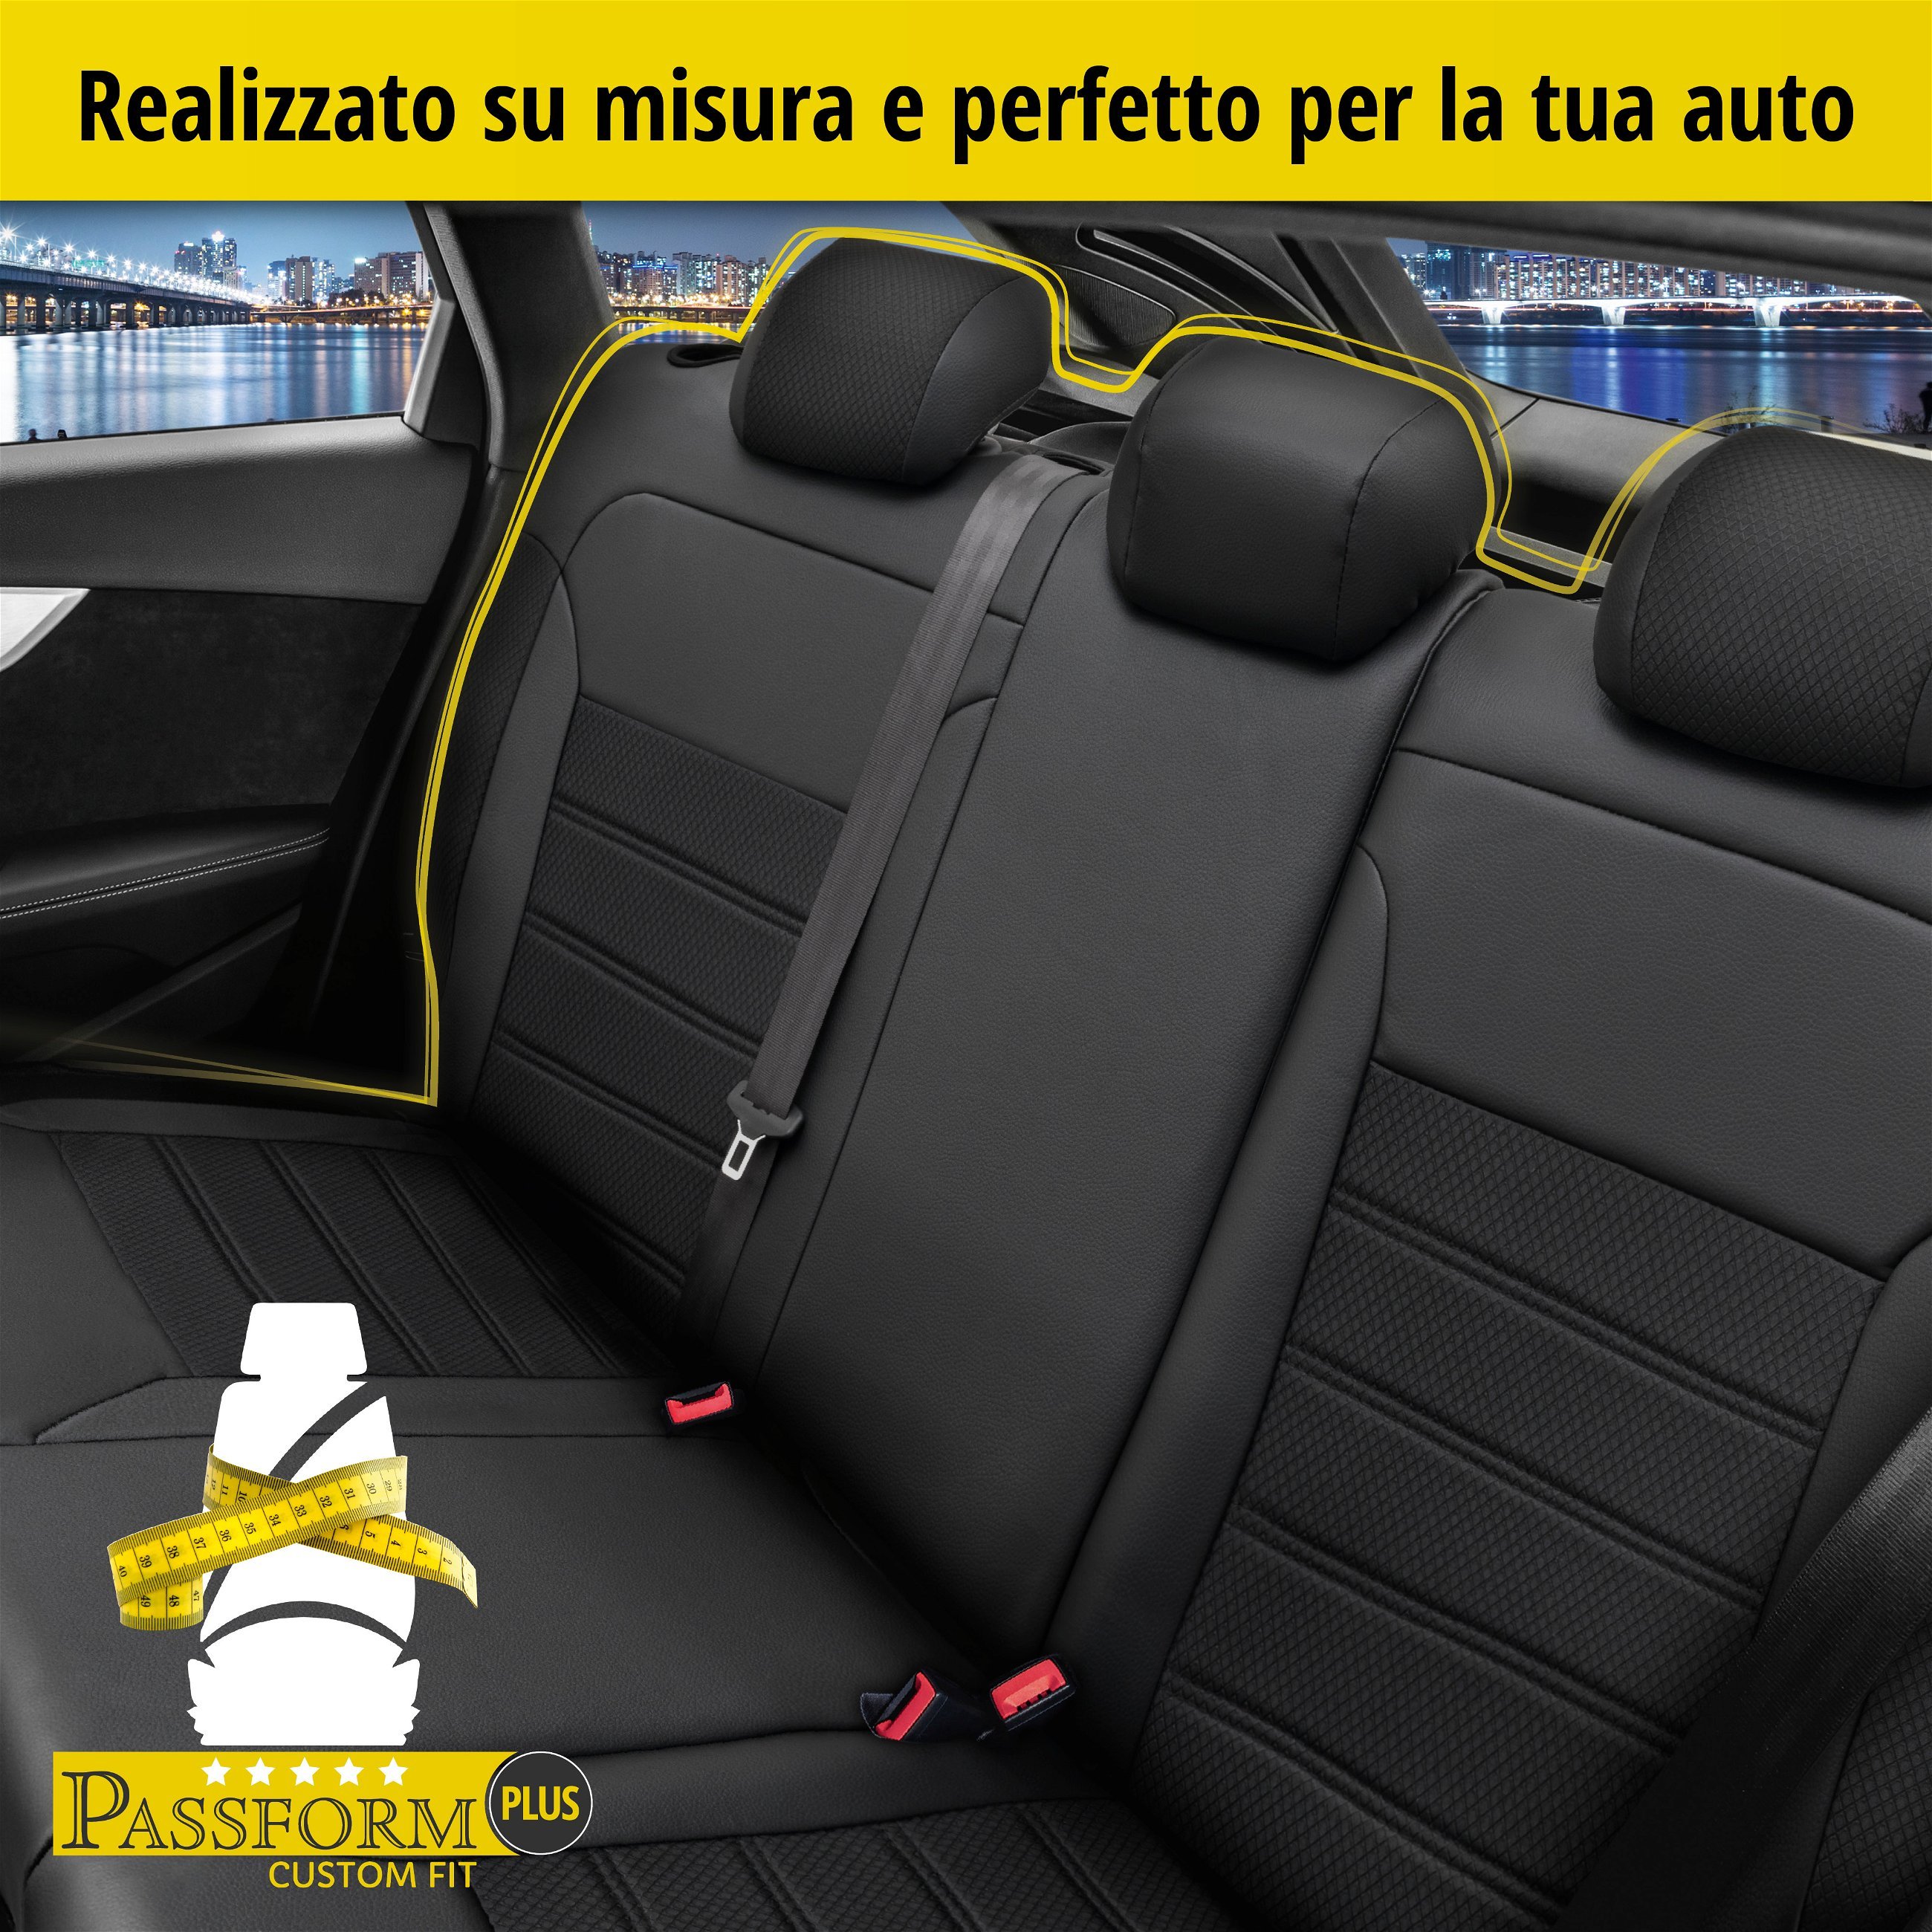 Coprisedili Aversa per Skoda Superb III Combi (3V5) 03/2015-Oggi, 1 coprisedili posteriore per sedili normali